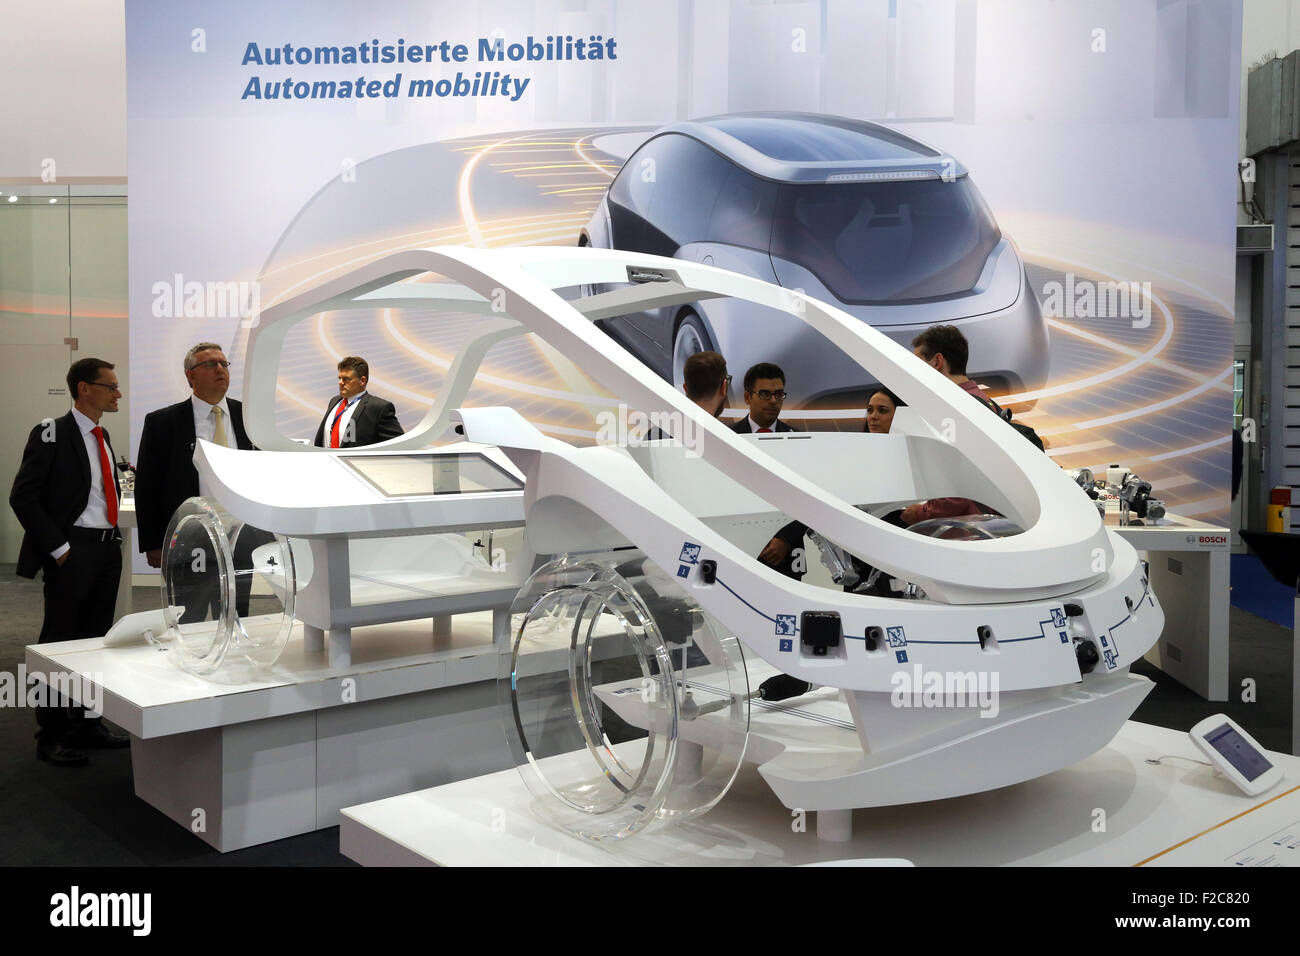 Frankfurt/M, 16.09.2015 - Connected Mobilitätssystem auf dem BOSCH-Stand auf der 66. internationalen Motor Show IAA 2015 (Internationale Automobil Ausstellung, IAA) in Frankfurt/Main, Deutschland Stockfoto